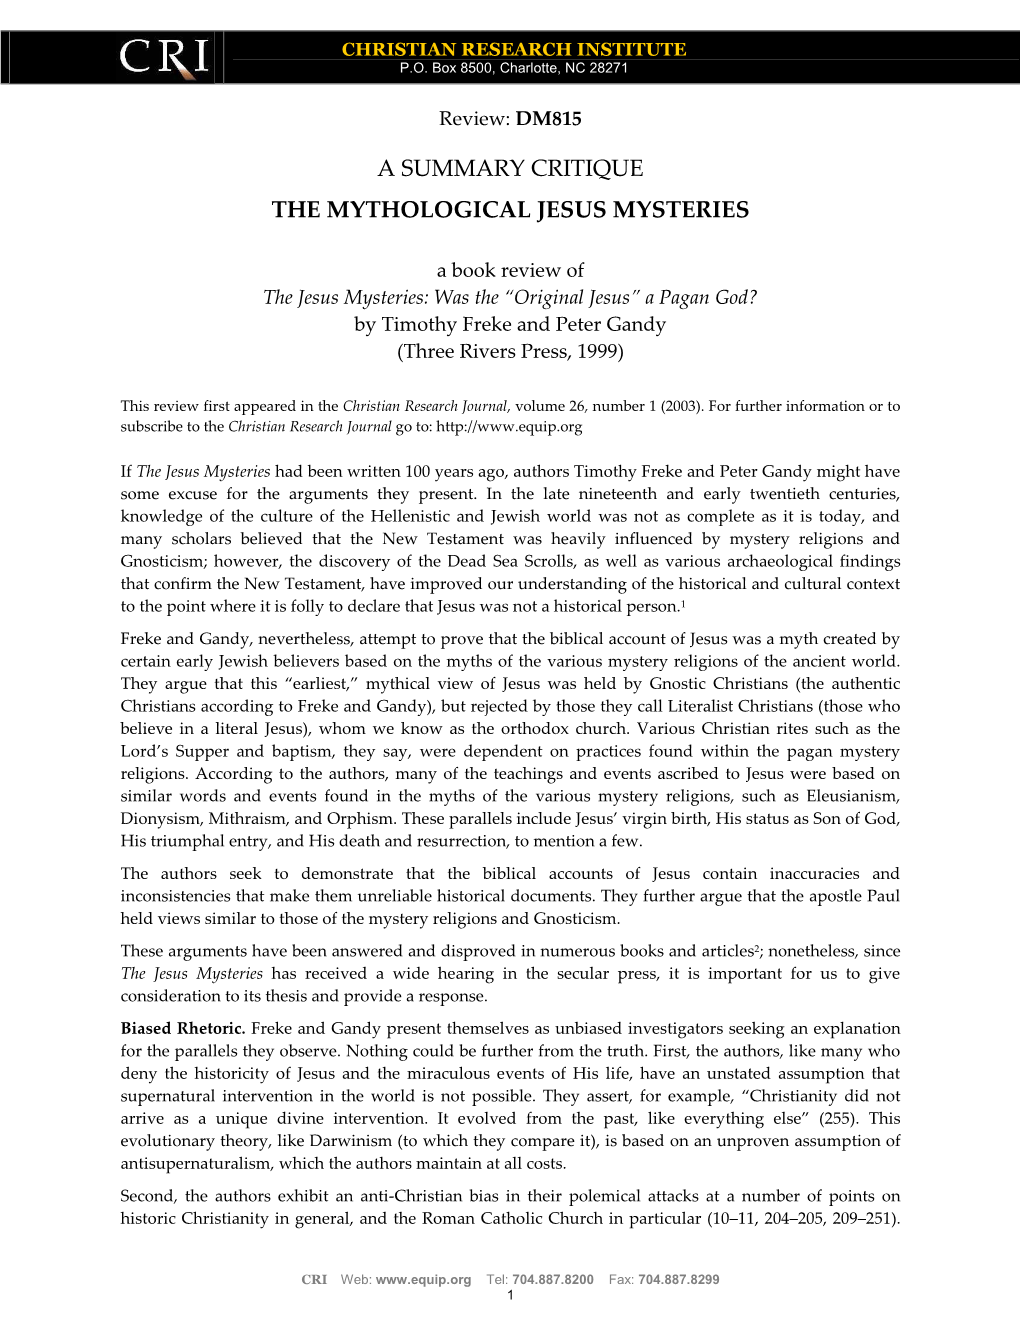 The Mythological Jesus Mysteries